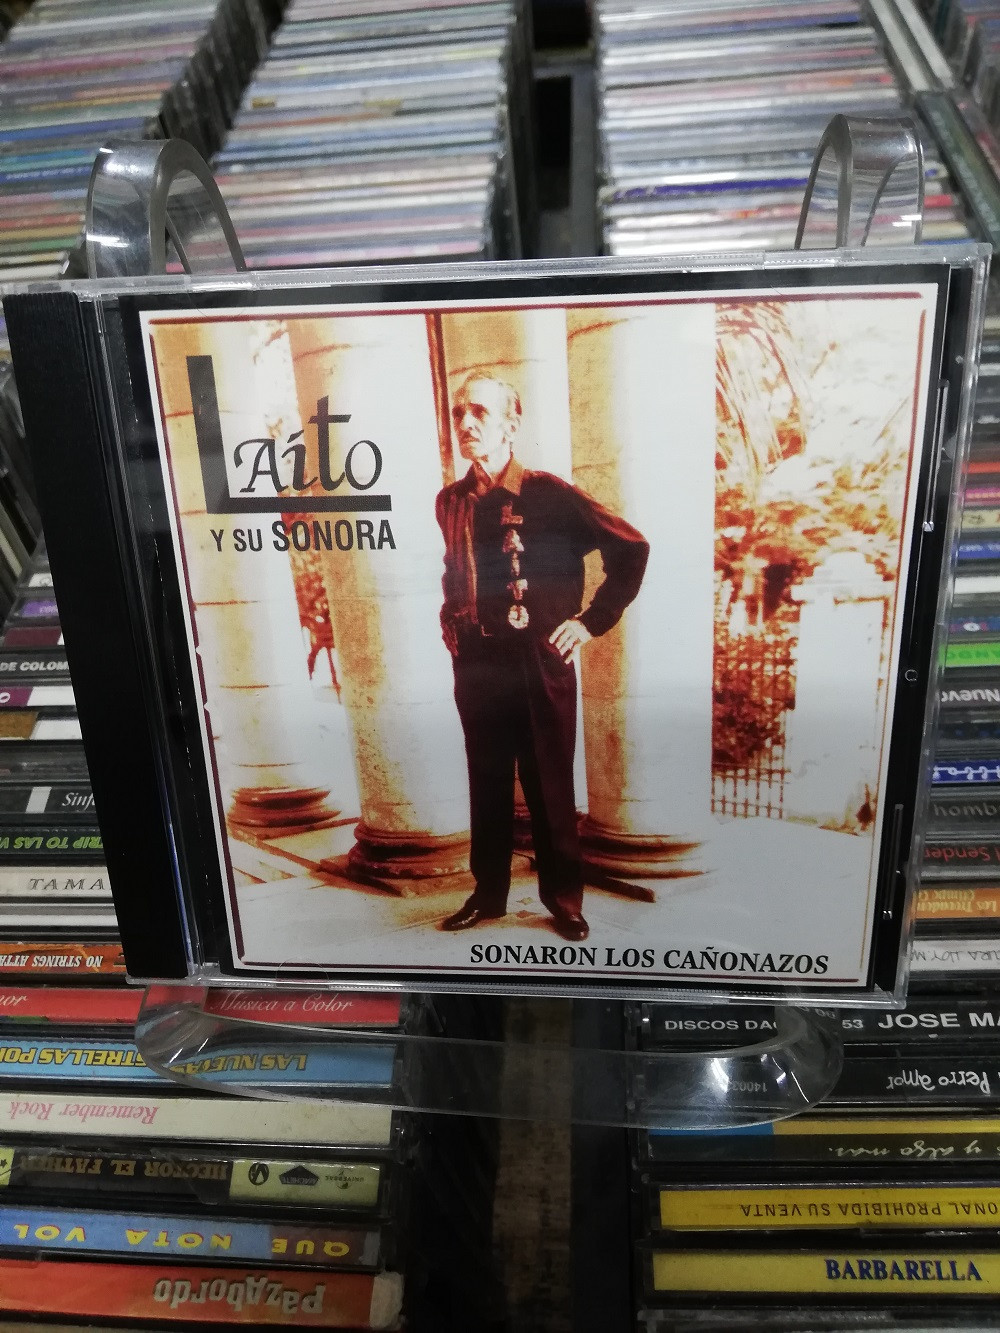 Imagen CD LAITO Y SU SONORA - SONARON LOS CAÑONAZOS